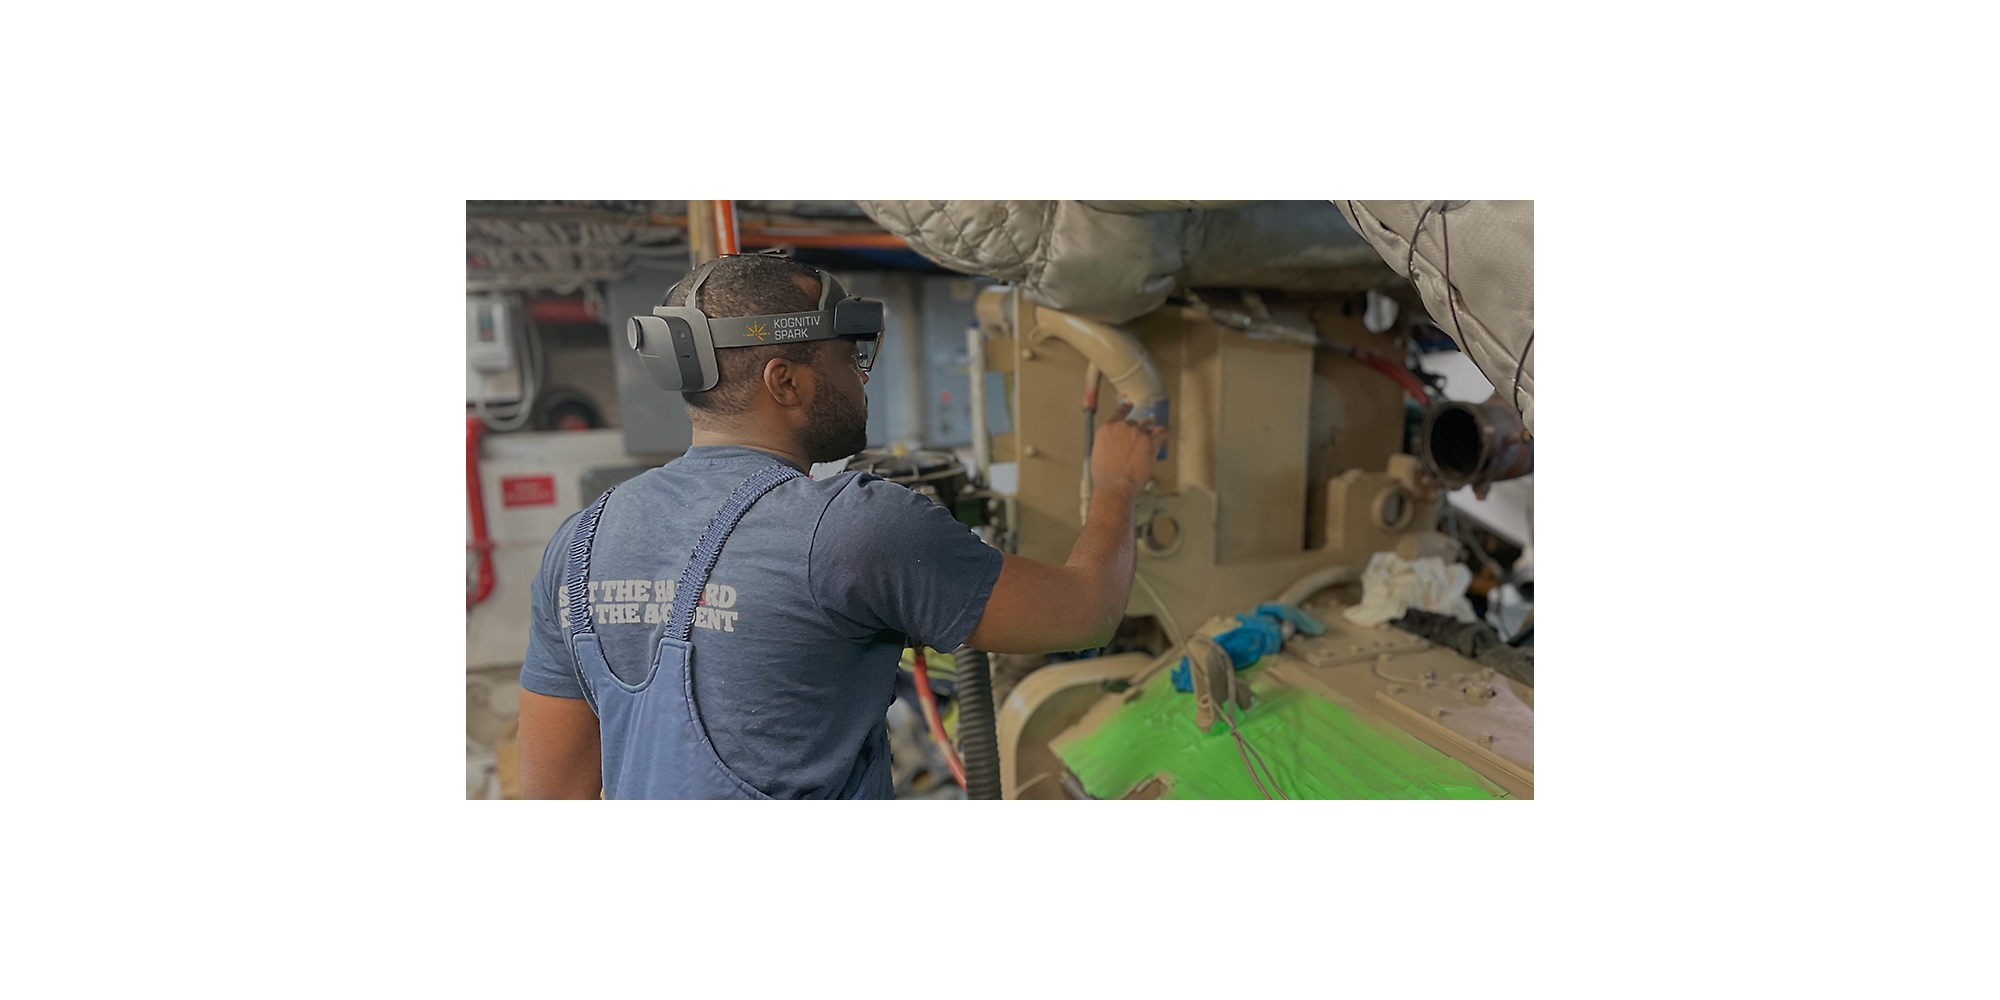 Een persoon die een HoloLens 2 draagt en aan een machine werkt.